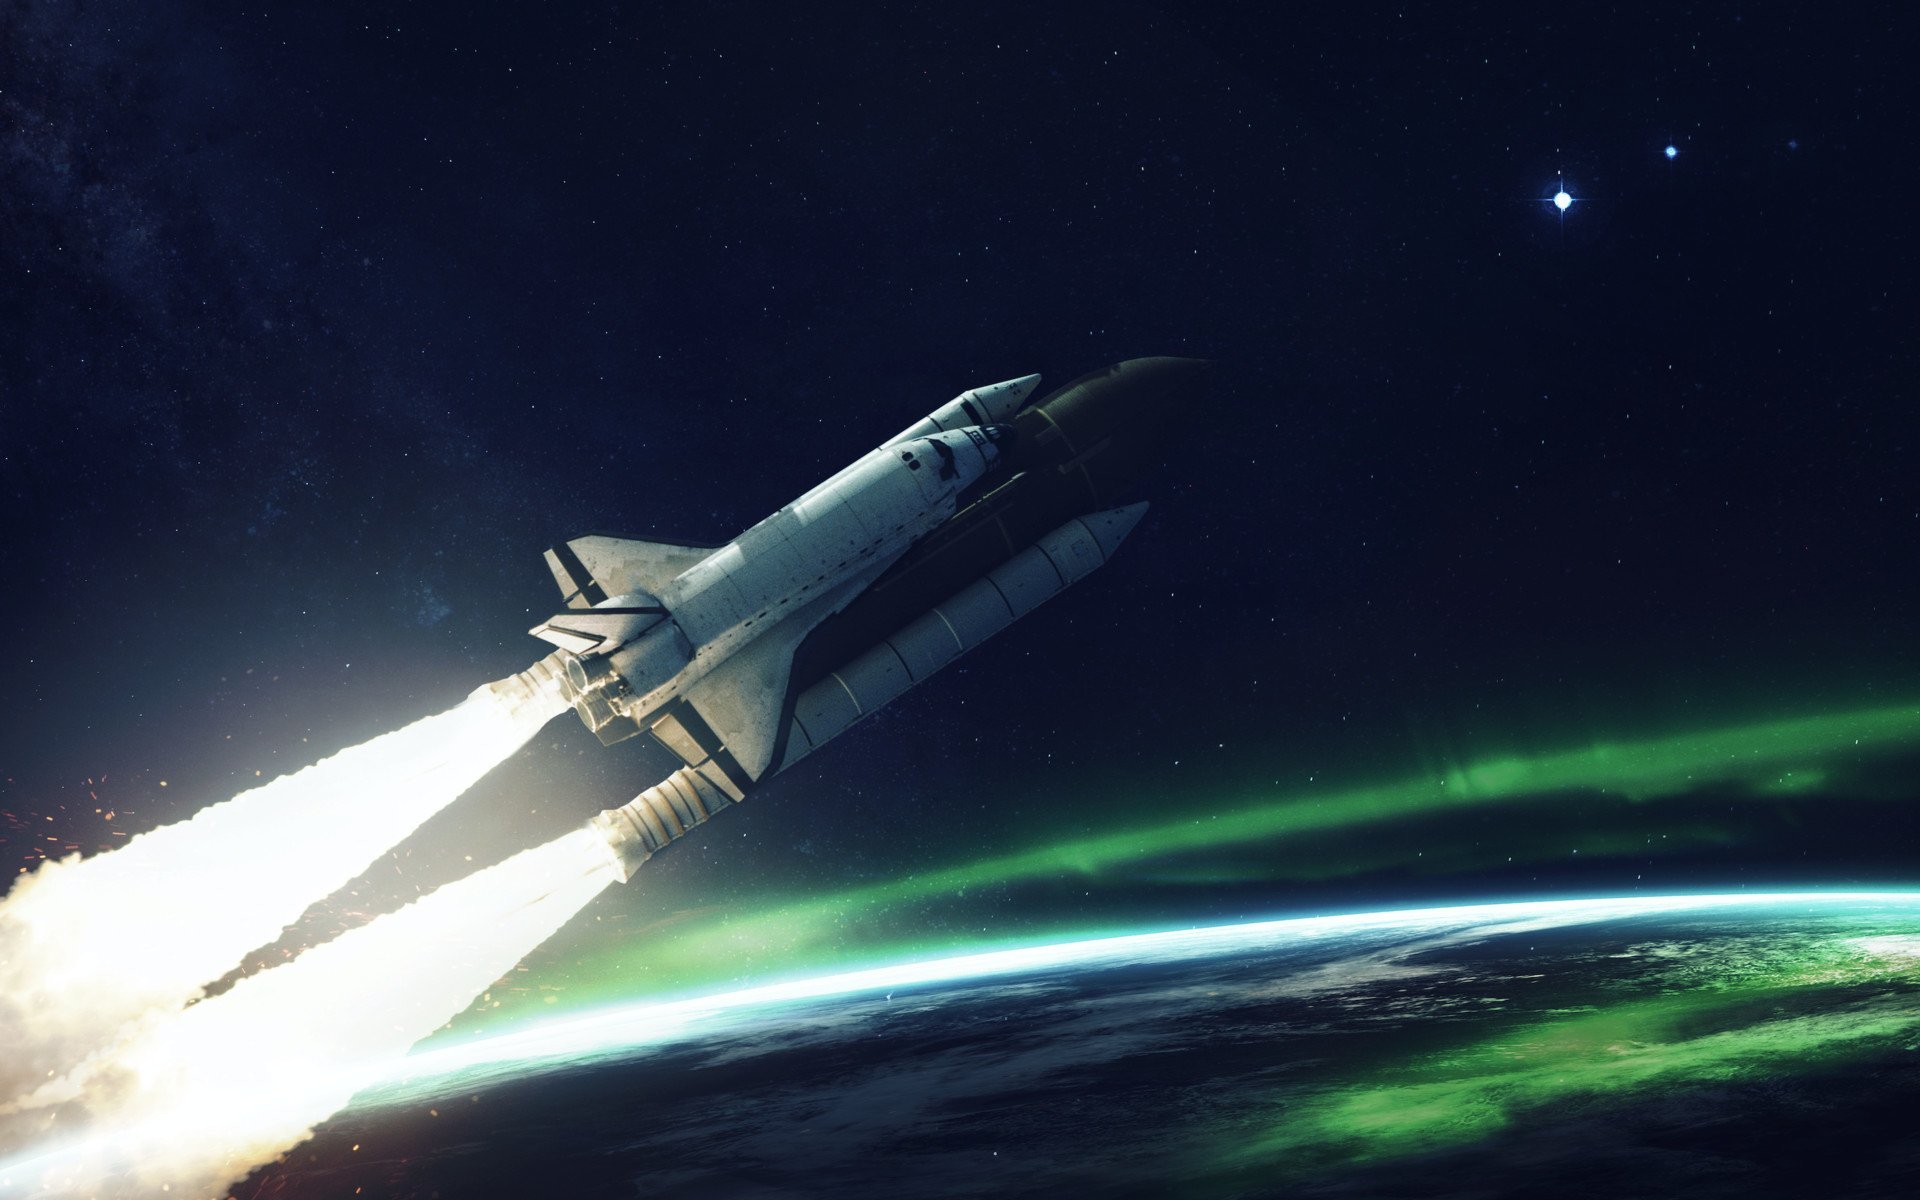 دانلود تصویر کامپیوتری و کارتونی موشک در حال پرواز در فضا 